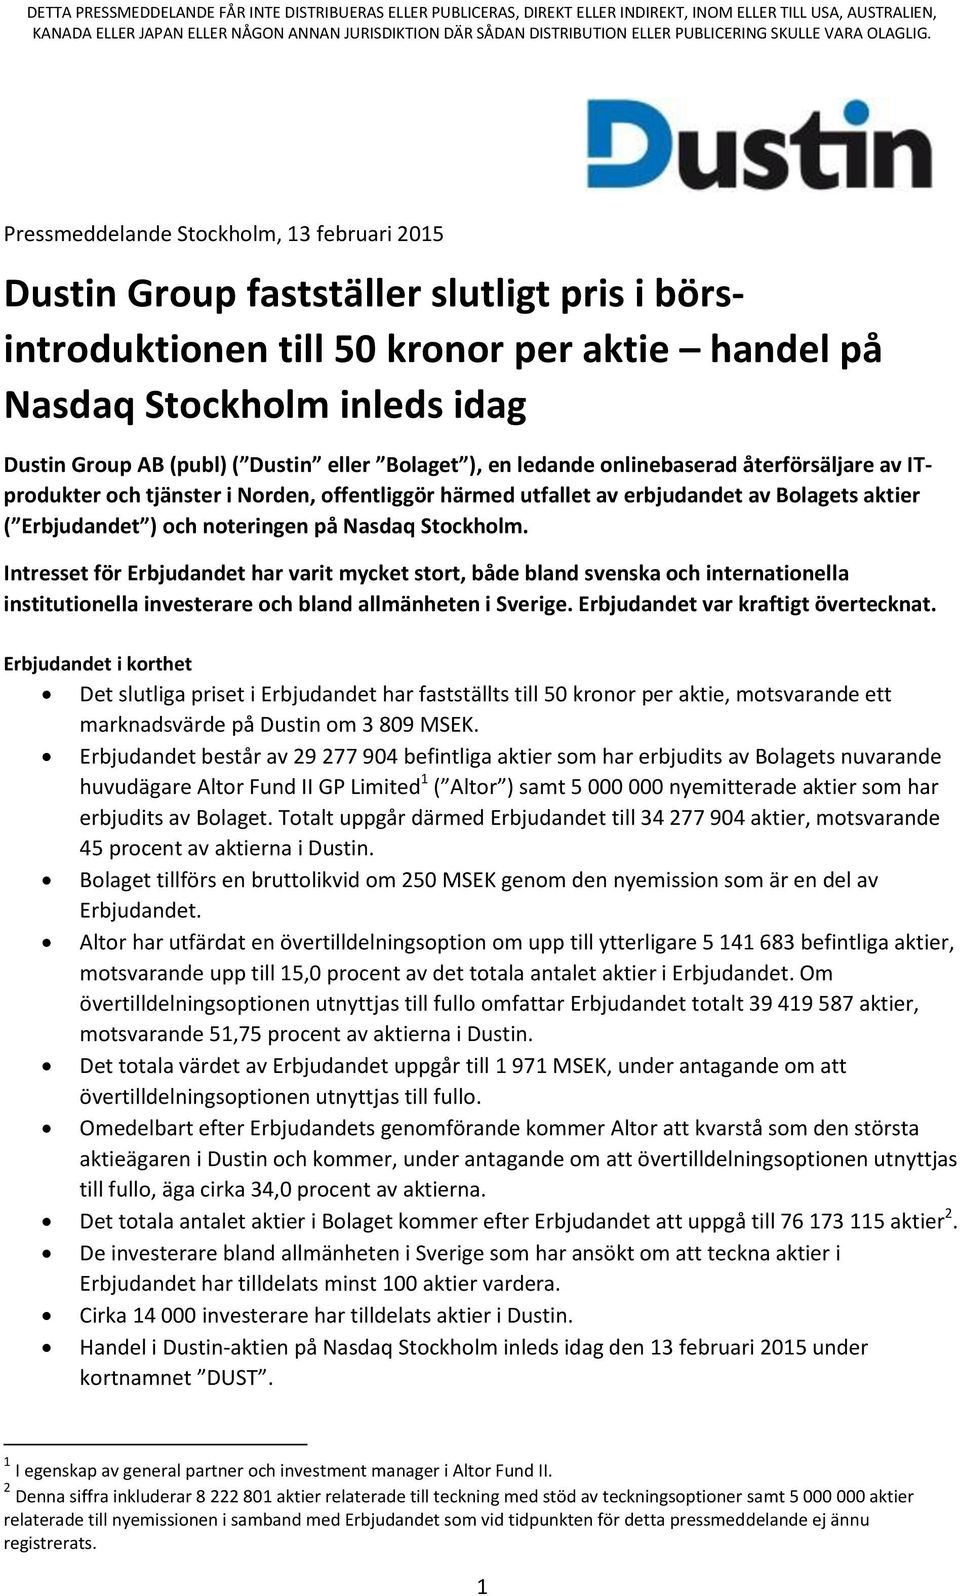 Pressmeddelande Stockholm, 13 februari 2015 Dustin Group fastställer slutligt pris i börsintroduktionen till 50 kronor per aktie handel på Nasdaq Stockholm inleds idag Dustin Group AB (publ) ( Dustin